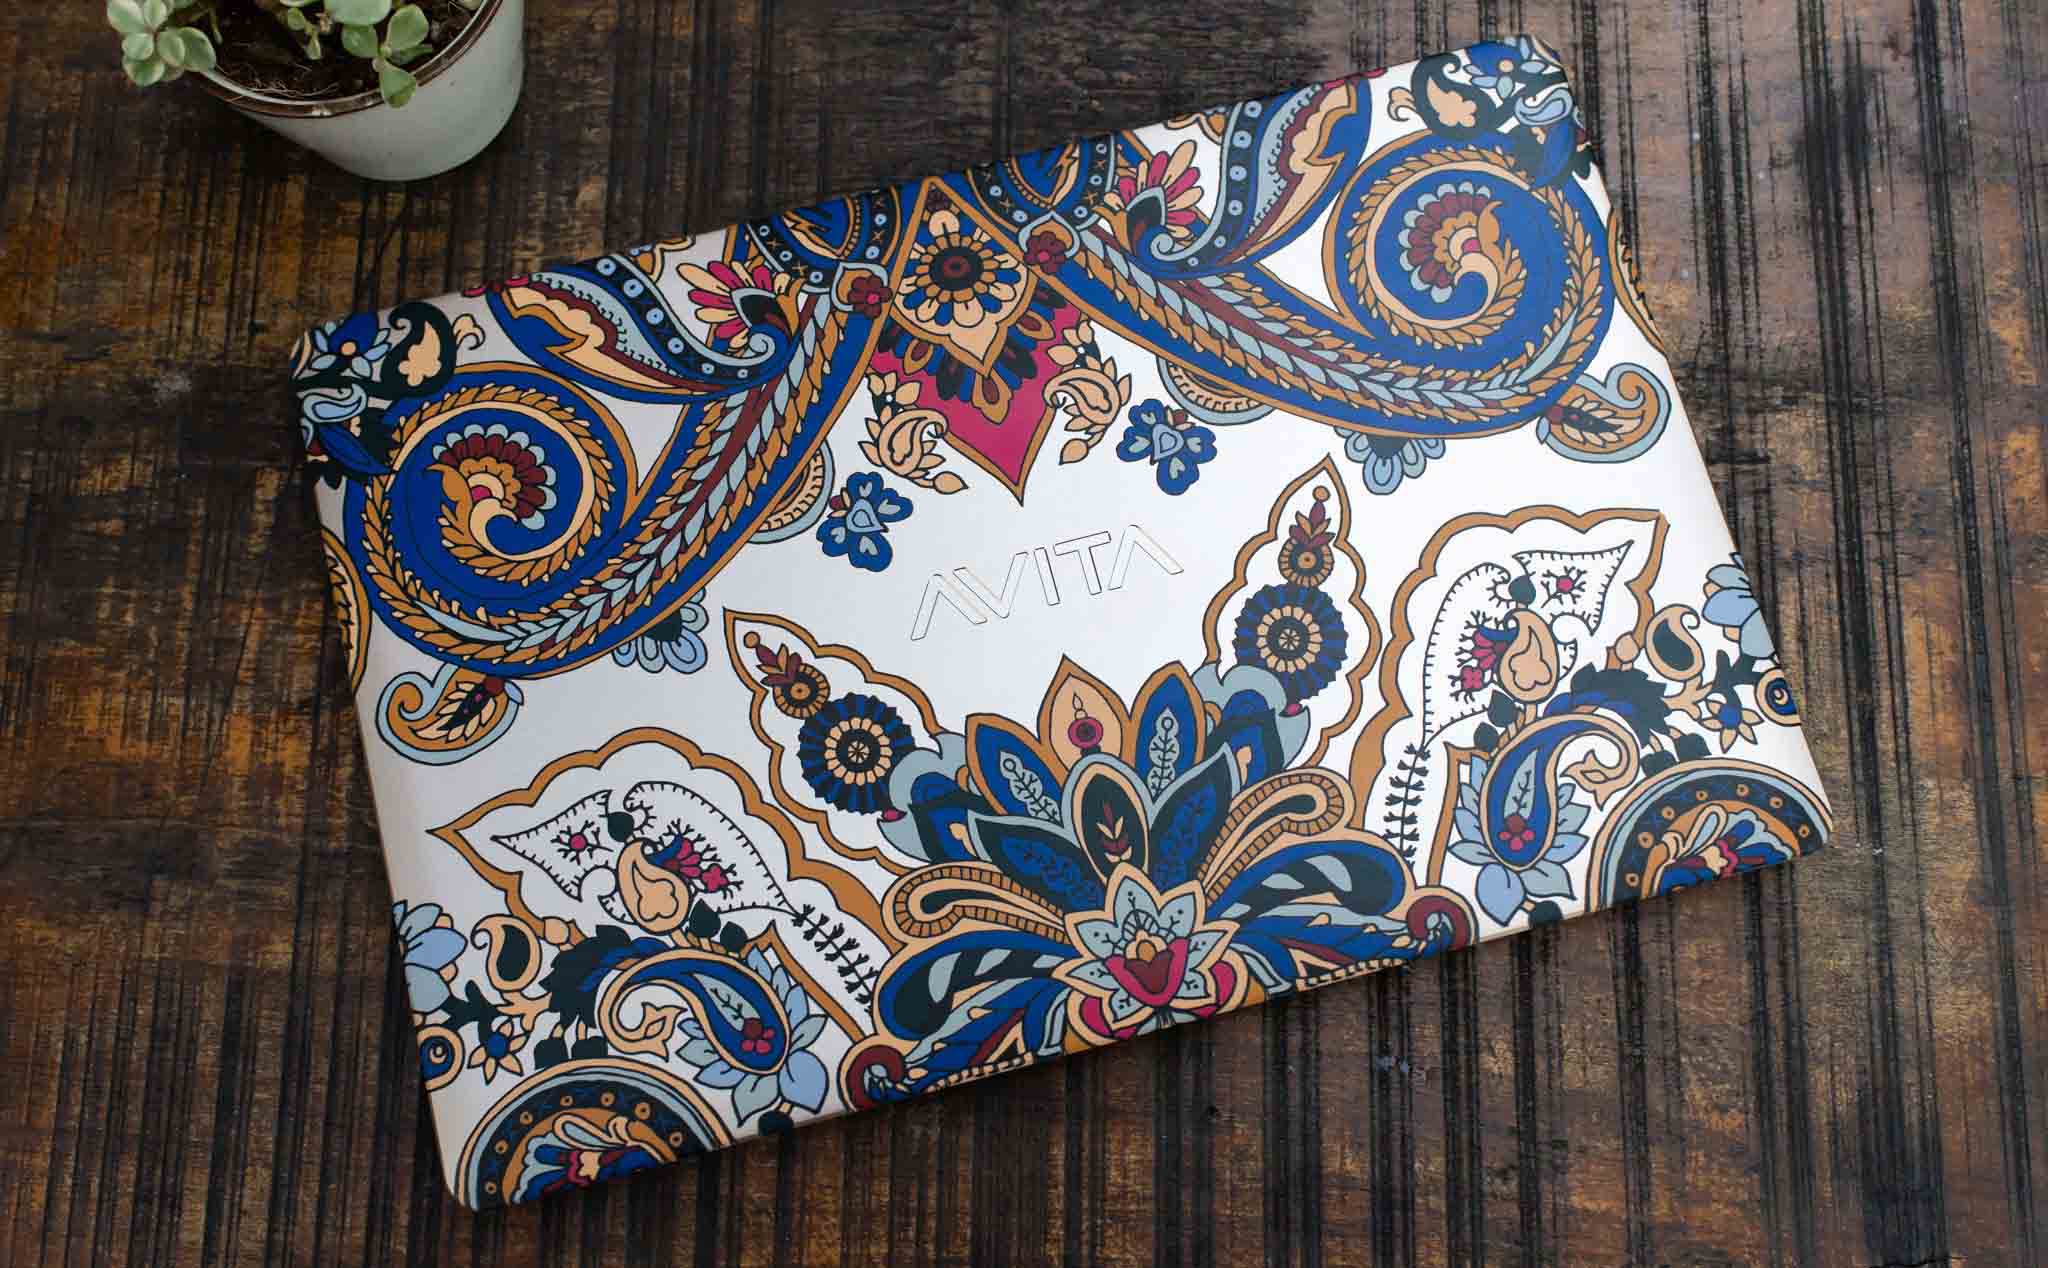 Avita Liber - laptop vỏ nhôm in hoa văn, mỏng nhẹ hợp với phái nữ, giá ~ 19 triệu đồng